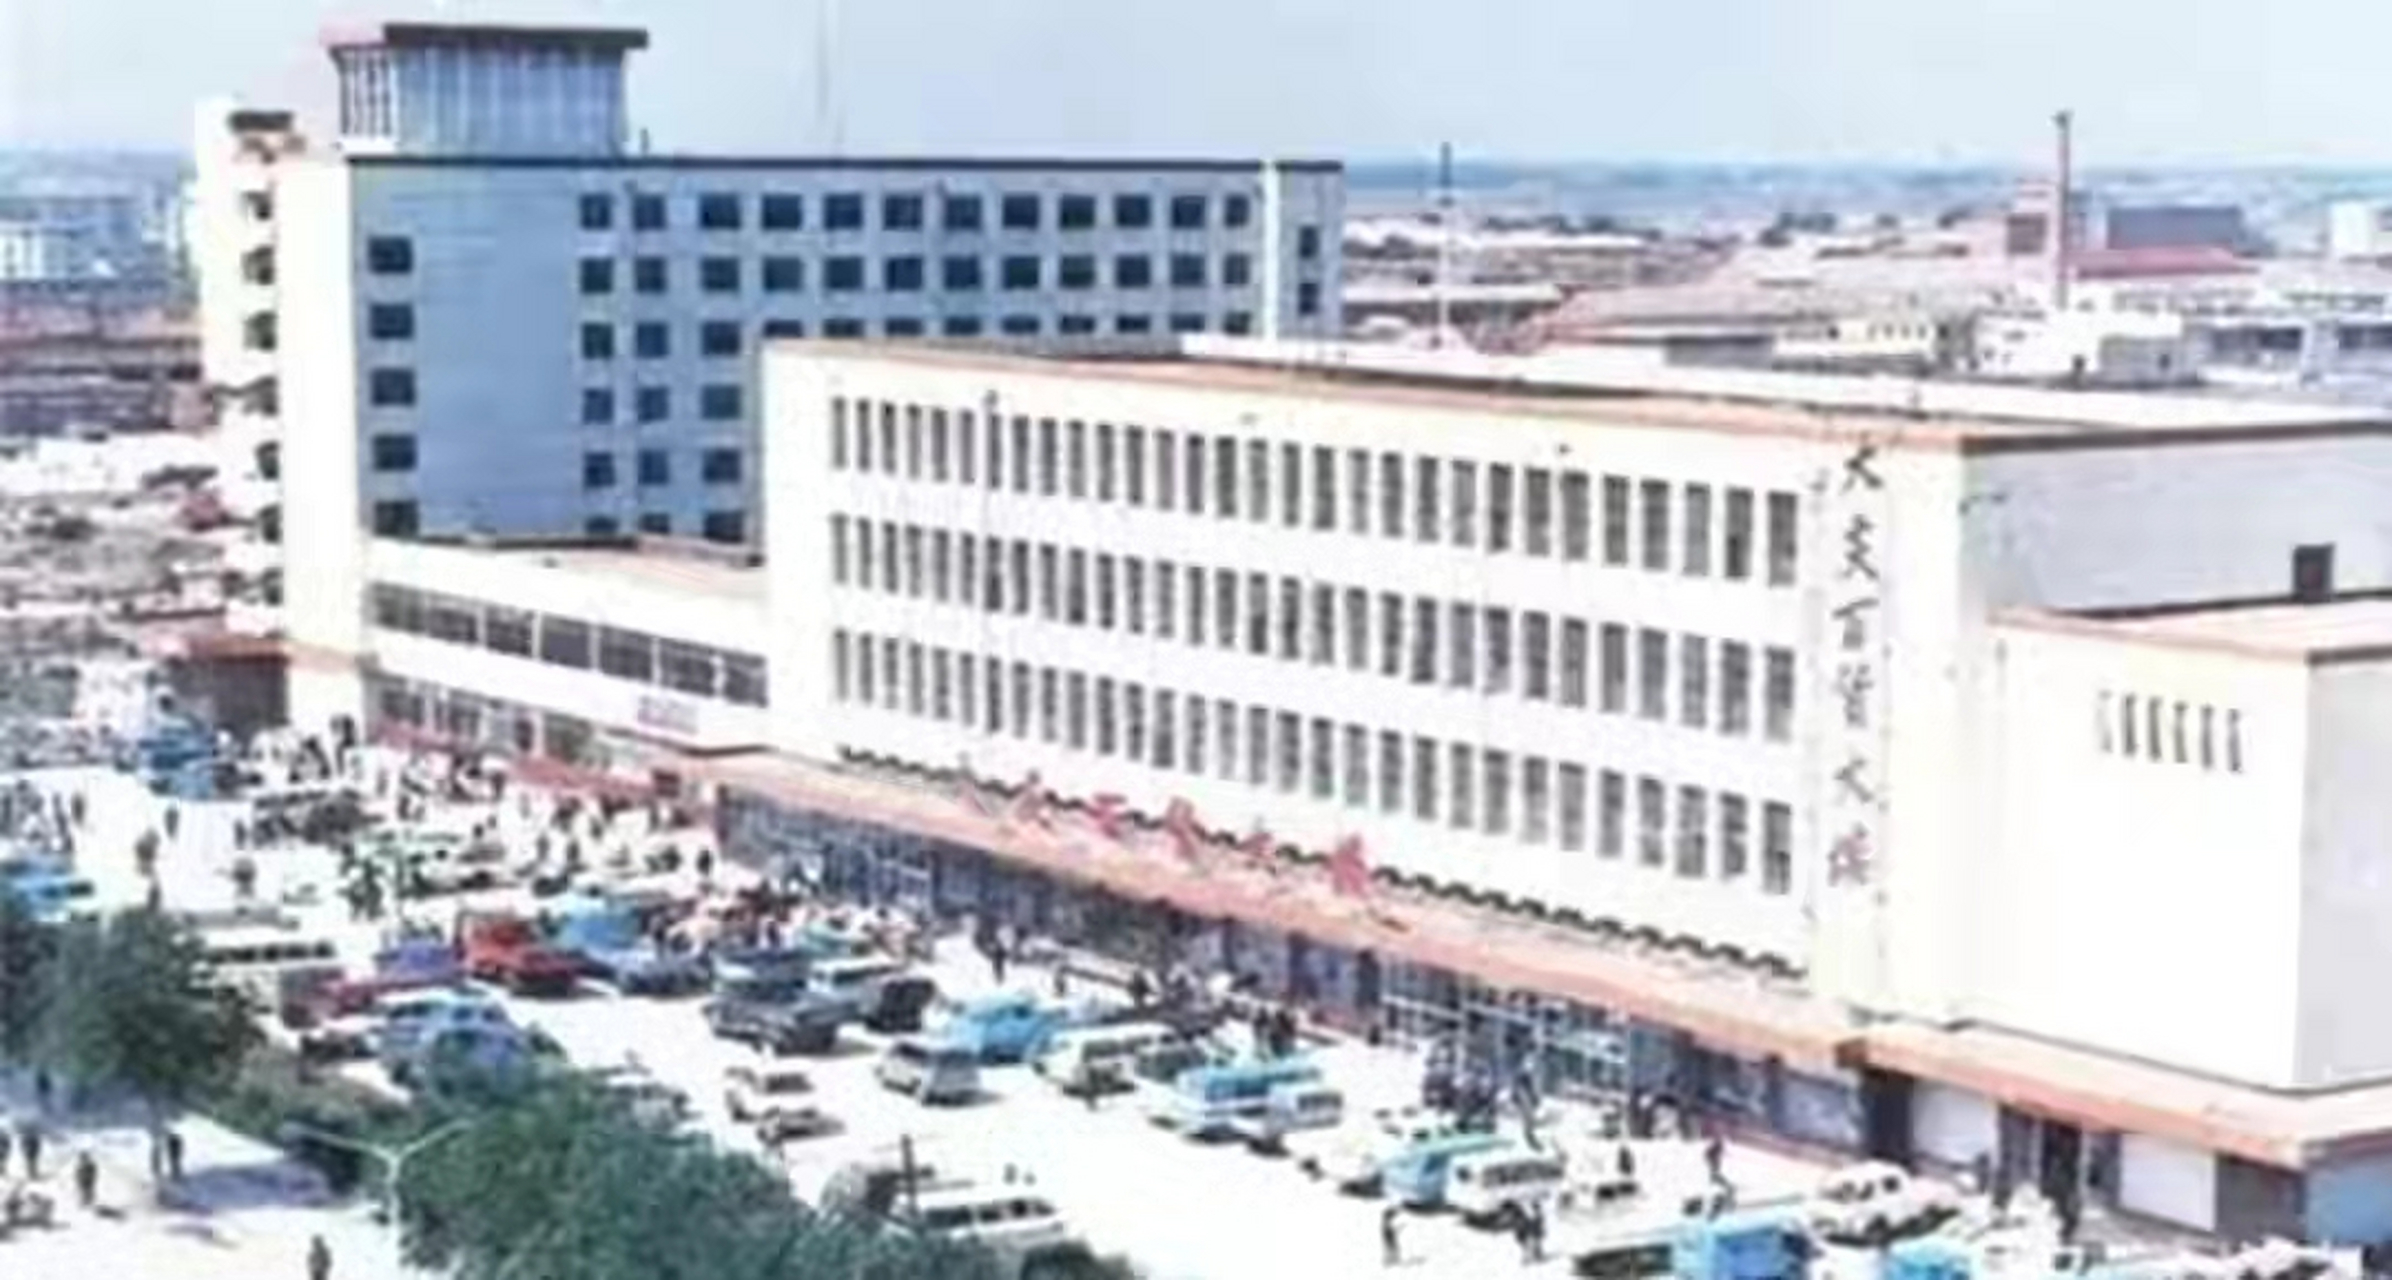 1983年,刚建成的大庆市百货大楼,它是当时大庆市最高档的商场之一